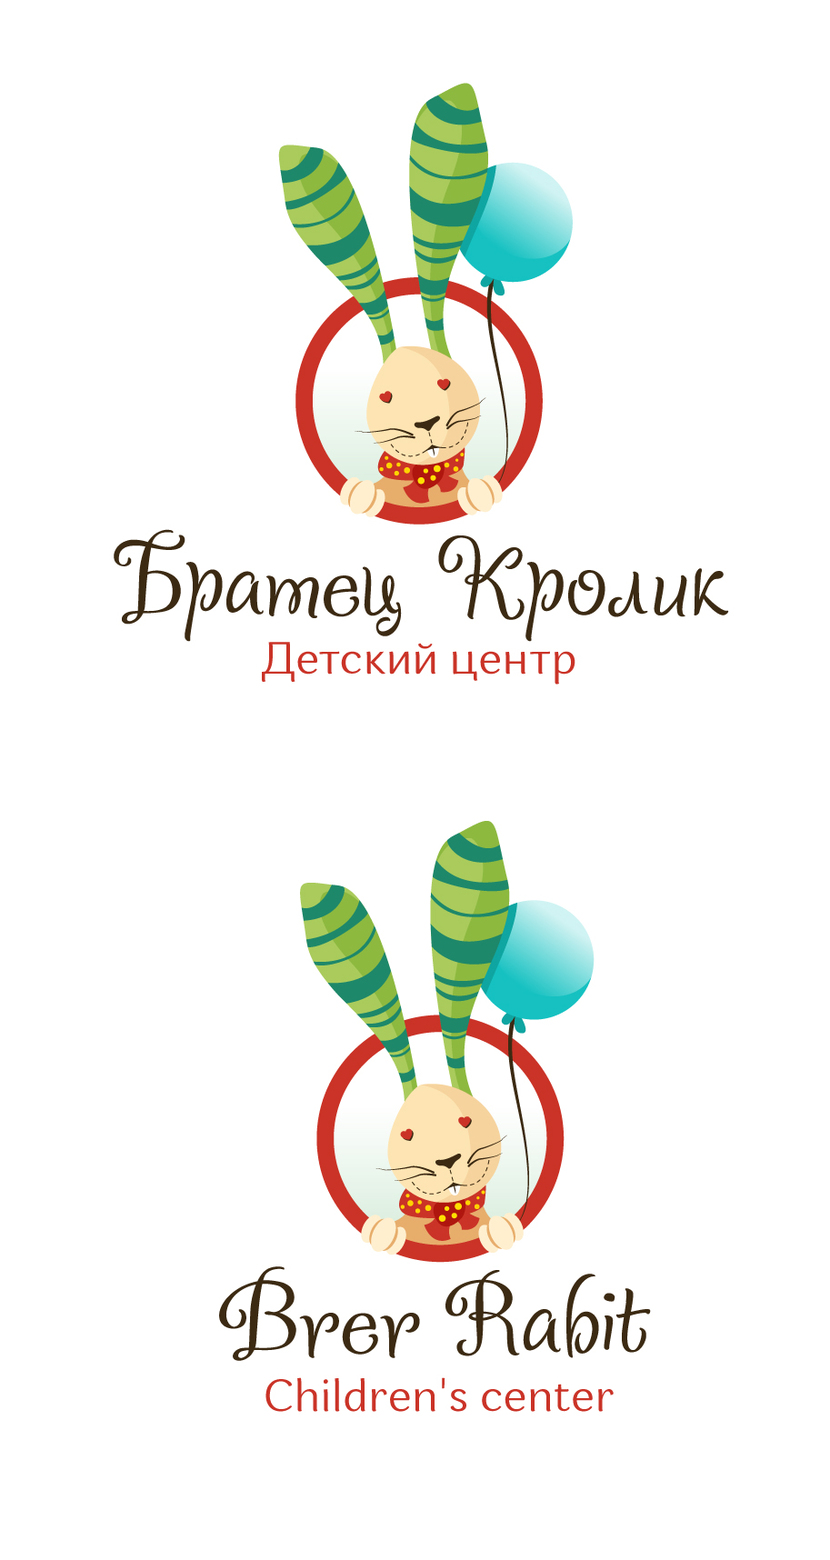 Добрый день! Мой вариант - Требуется разработать Логотип для Детского центра "Братец Кролик"